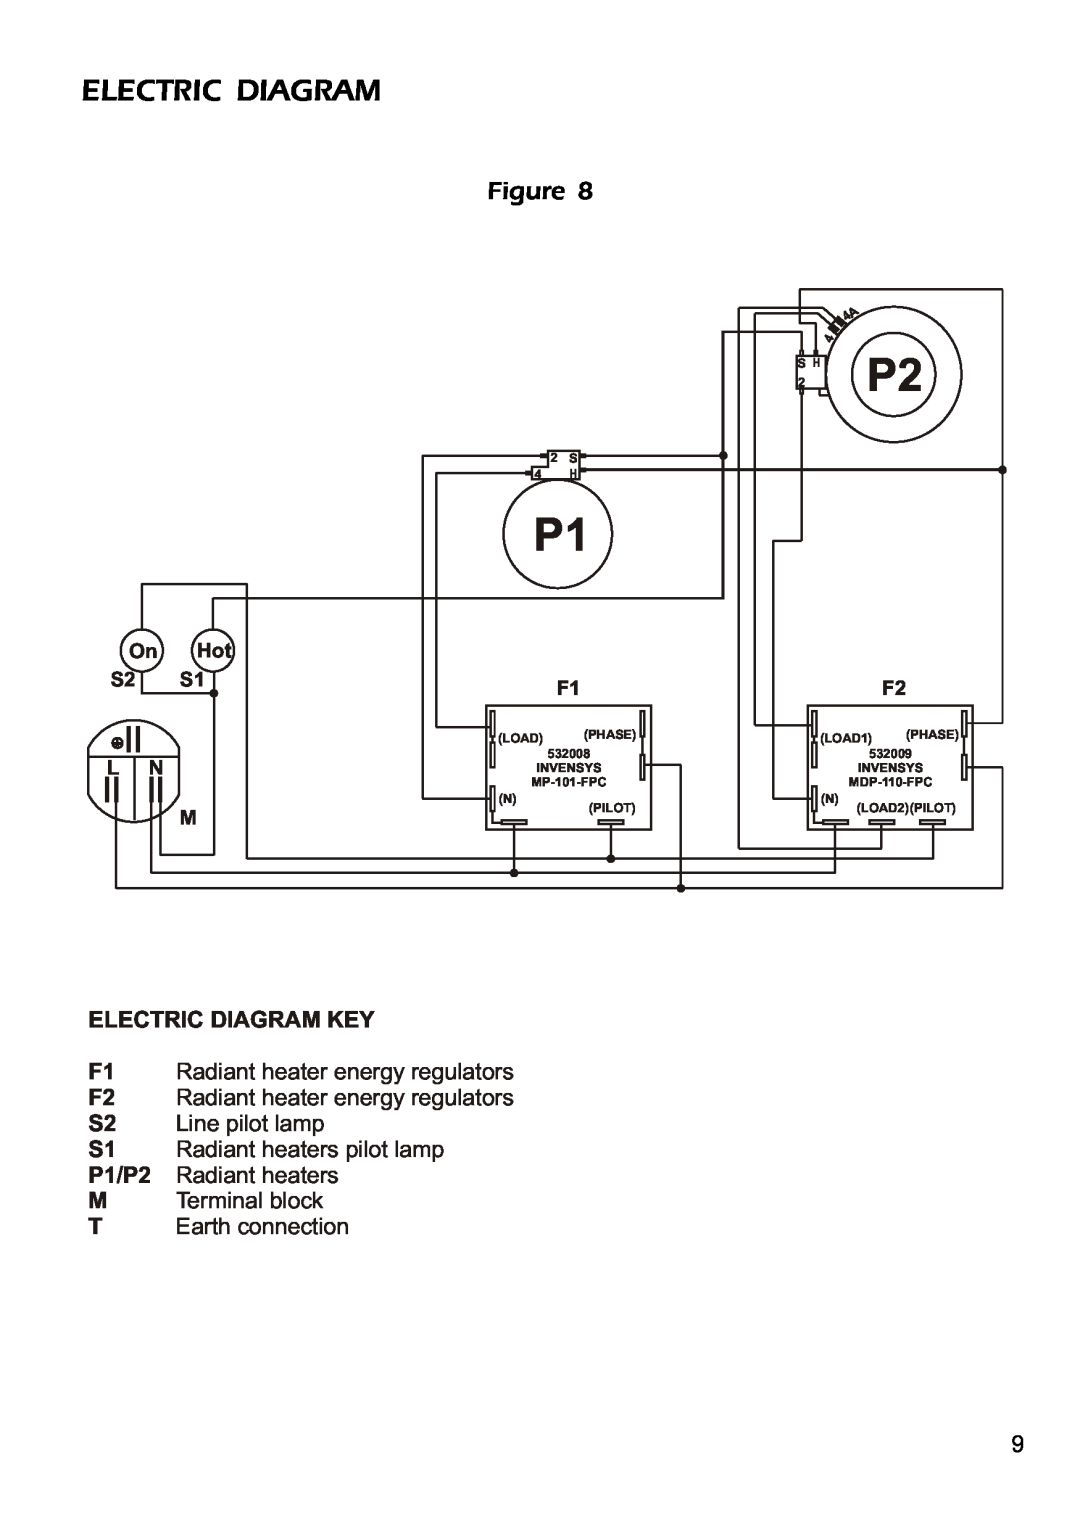 DeLonghi DE302HB Electric Diagram Key, F1 Radiant heater energy regulators, F2 Radiant heater energy regulators, Load 